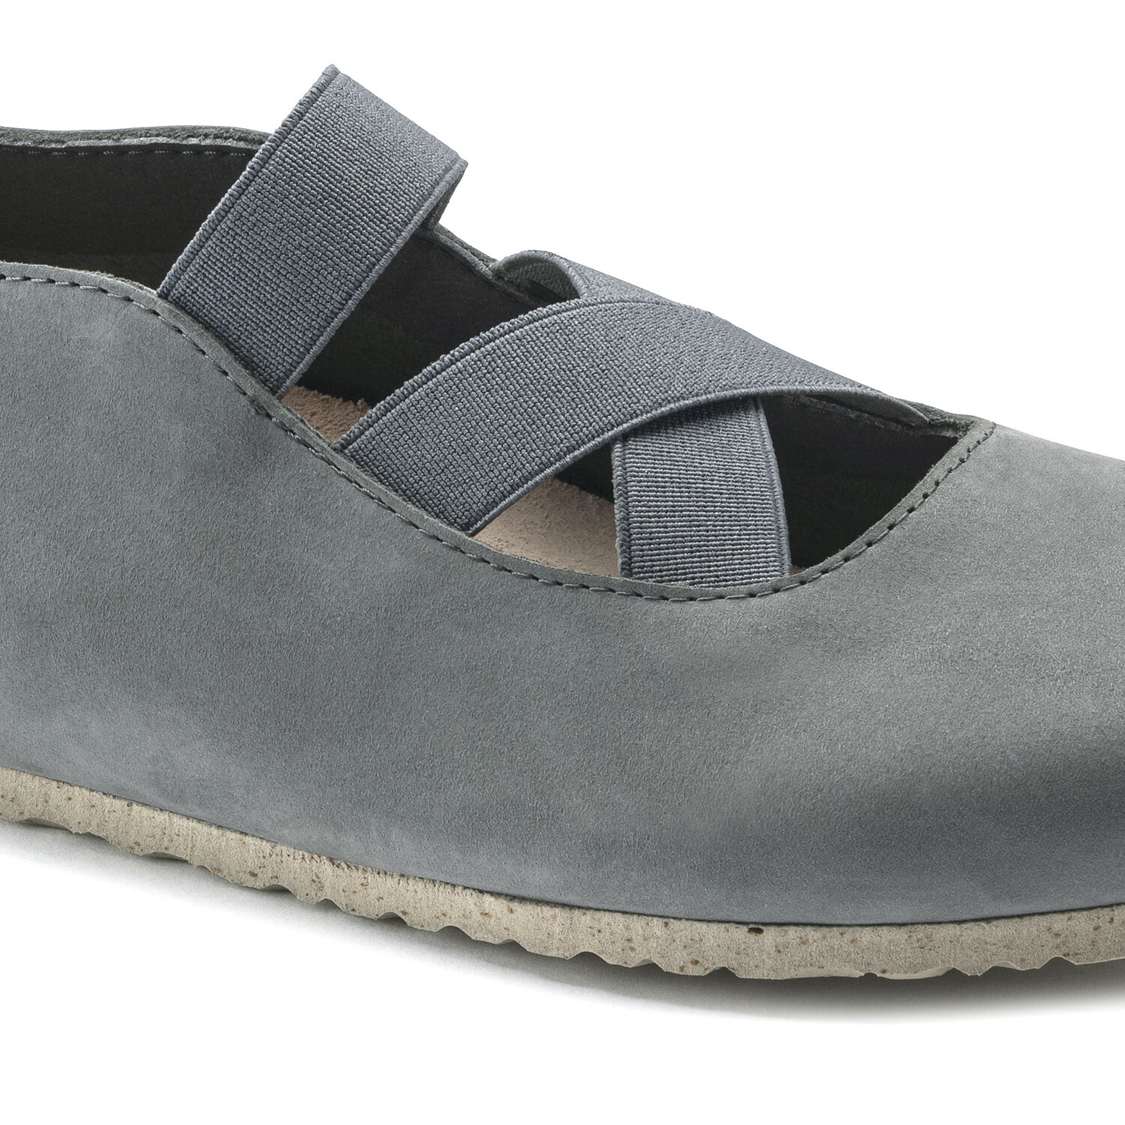 Grey Birkenstock Santa Ana Nubuck Leather Women's Low Shoes | 5Qt7YkT9zeJ